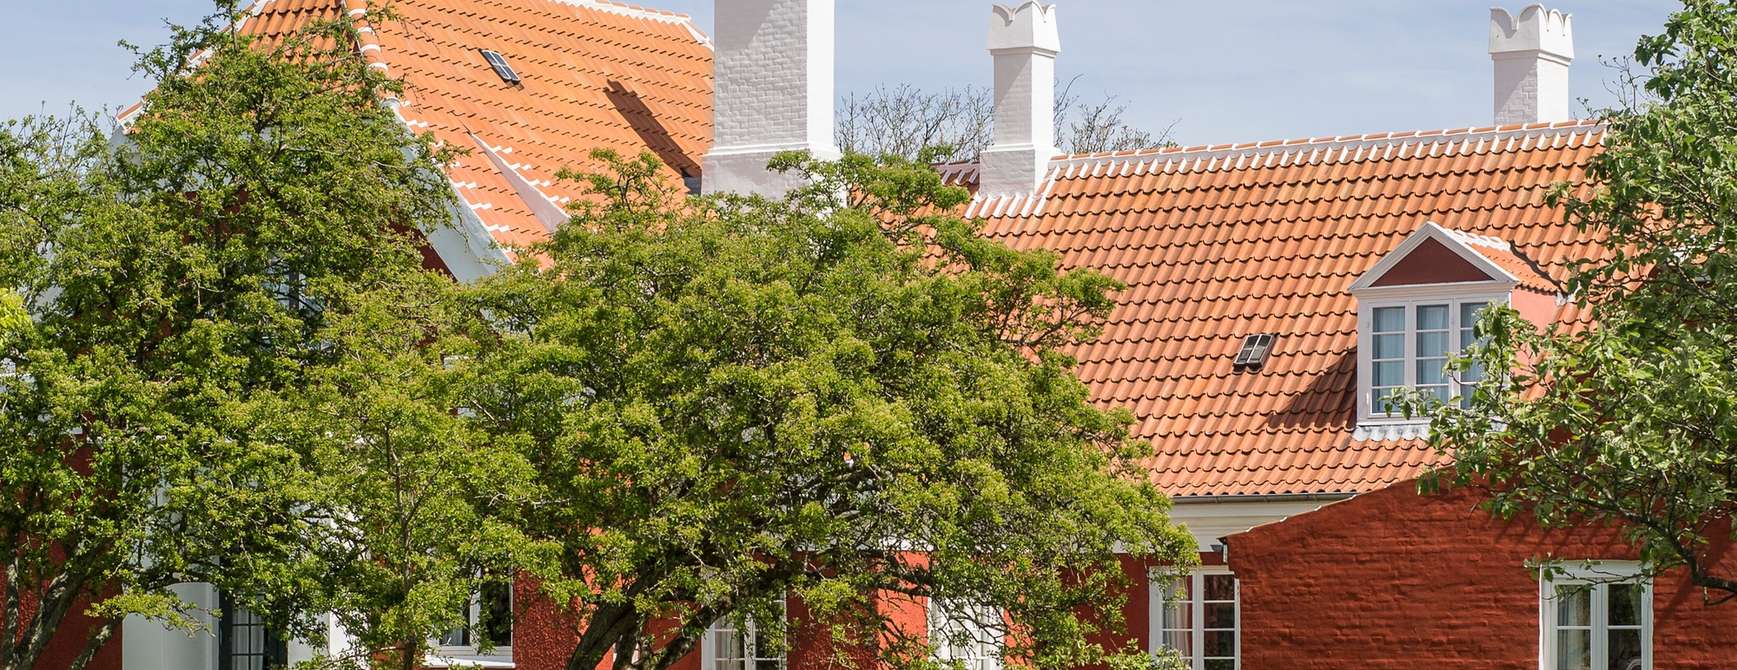 Anchers Hus - Ulrik Plesners tilbygning set fra haven. Photo: Skagens Kunstmuseer | Art Museums of Skagen